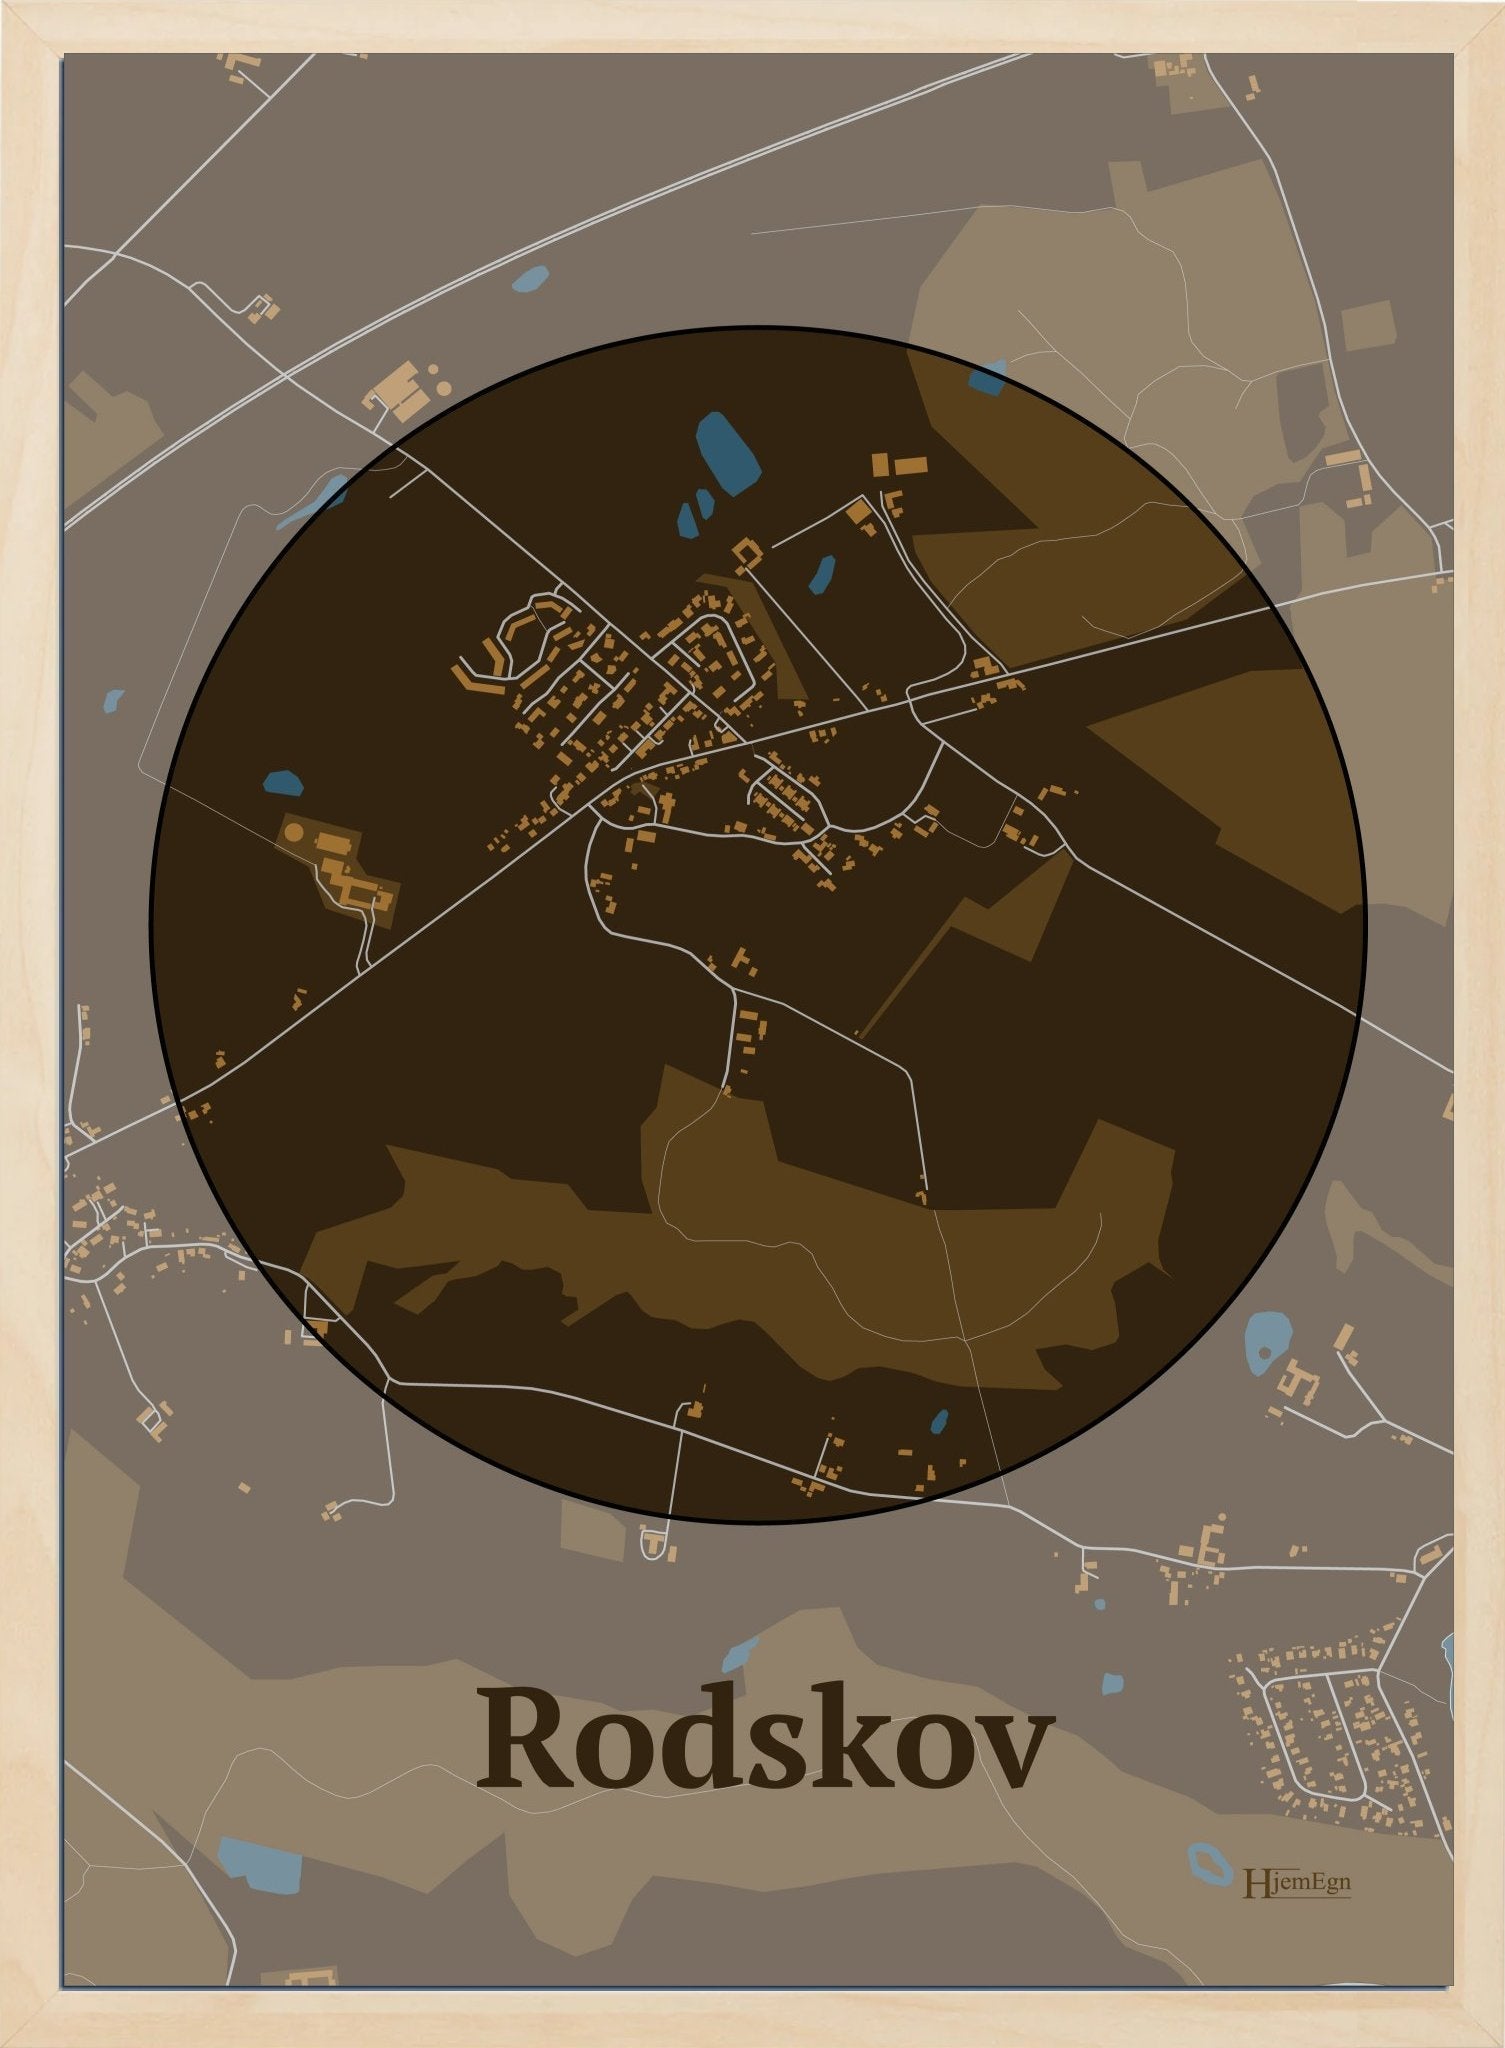 Rodskov plakat i farve mørk brun og HjemEgn.dk design centrum. Design bykort for Rodskov